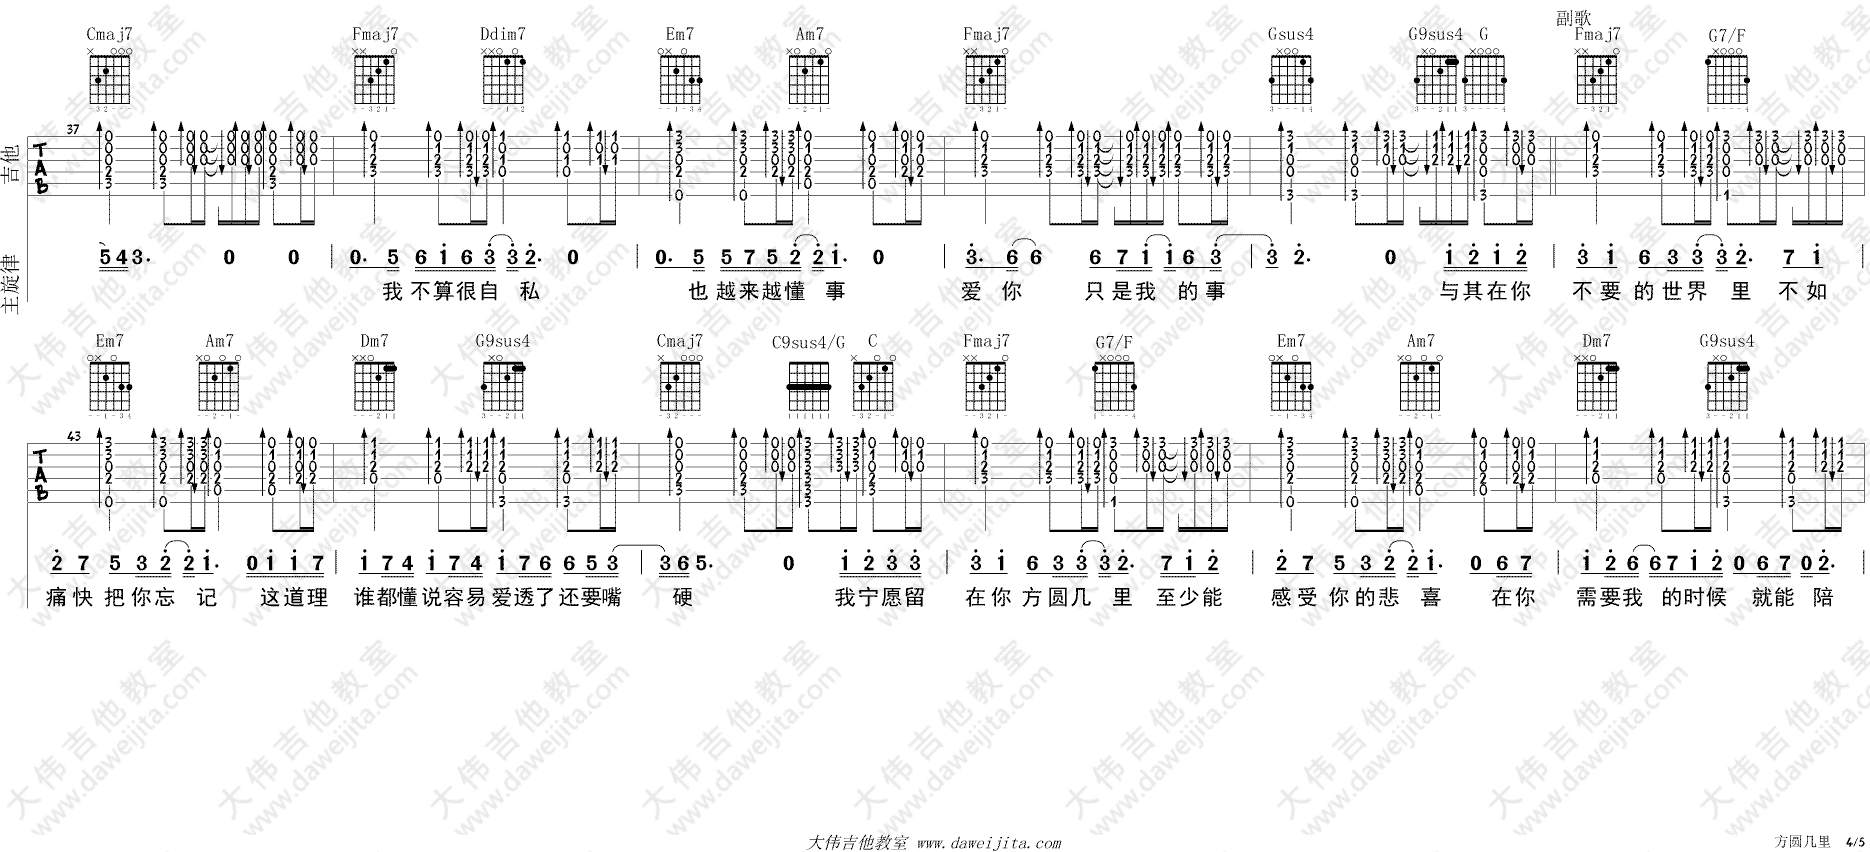 薛之谦《方圆几里》吉他谱(C调)-Guitar Music Score